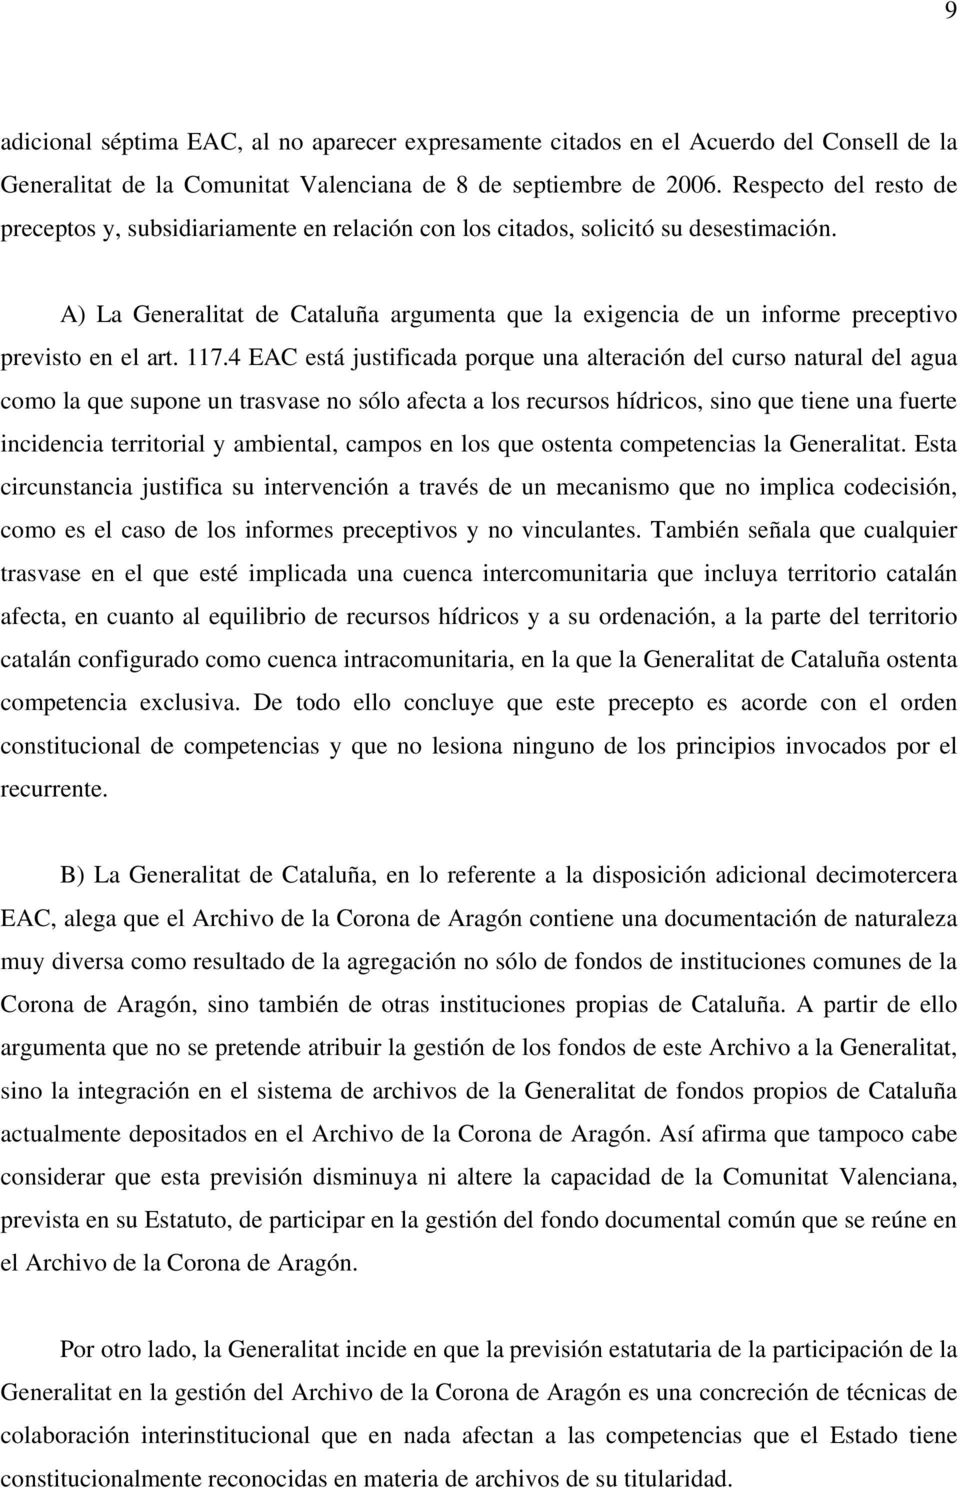 A) La Generalitat de Cataluña argumenta que la exigencia de un informe preceptivo previsto en el art. 117.